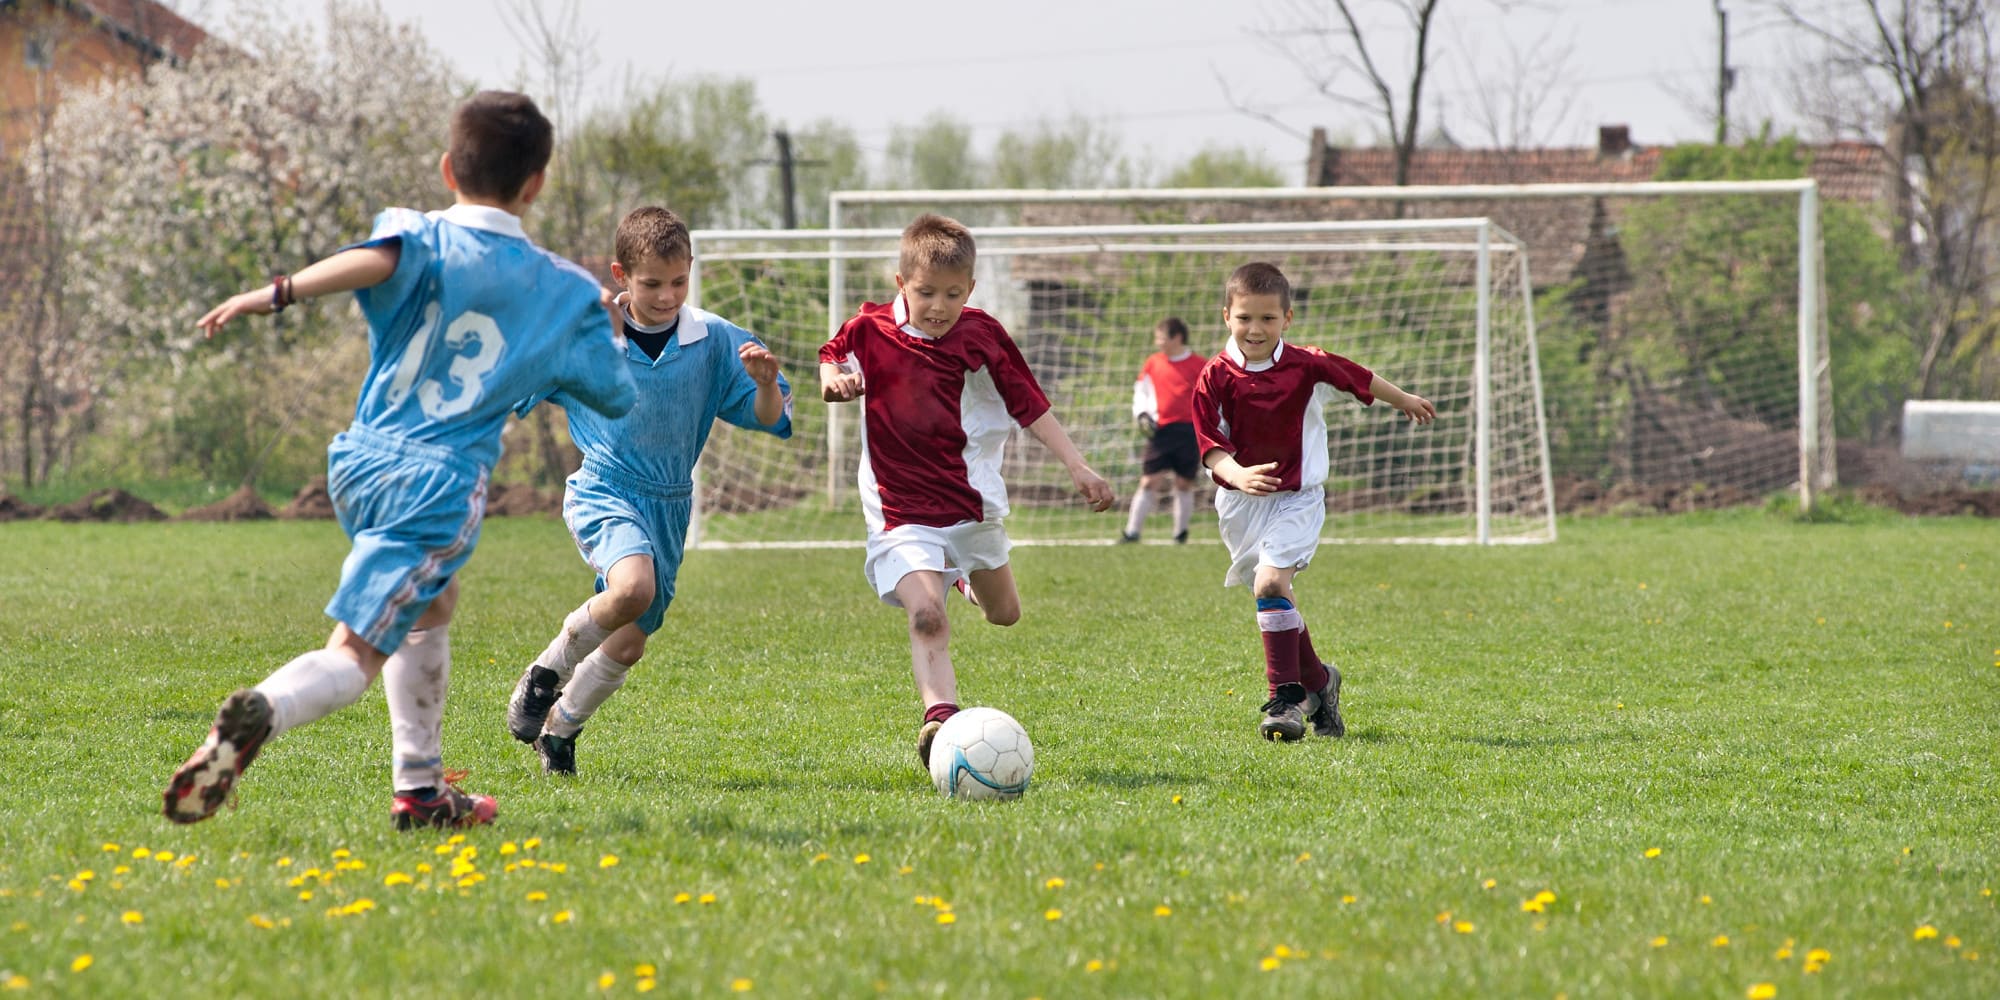 Тема фотографии игра в футбол. Детский футбол. Игра футбол. Футбол дети. Футбол дети на улице.